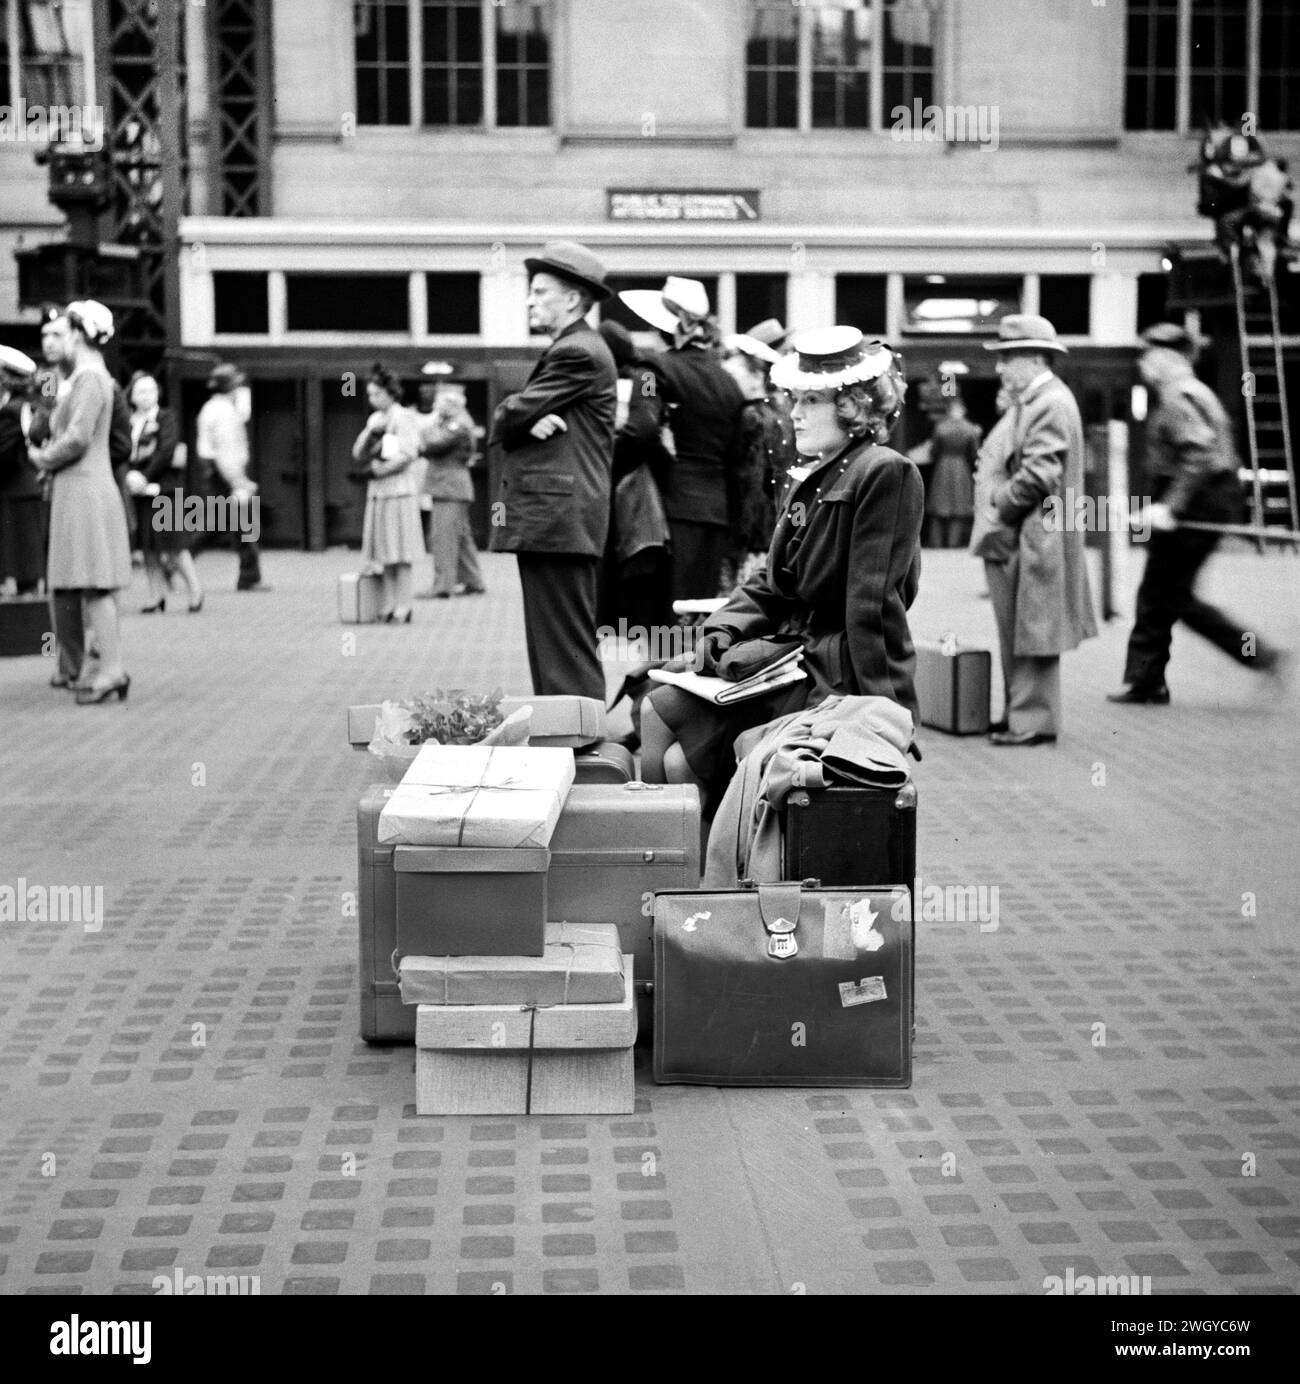 Frau, die auf dem Gepäck sitzt, während sie auf den Zug wartet, Pennsylvania Station, New York City, New York, USA, Gordon Parks, U.S. Office of war Information, Juni 1943 Stockfoto